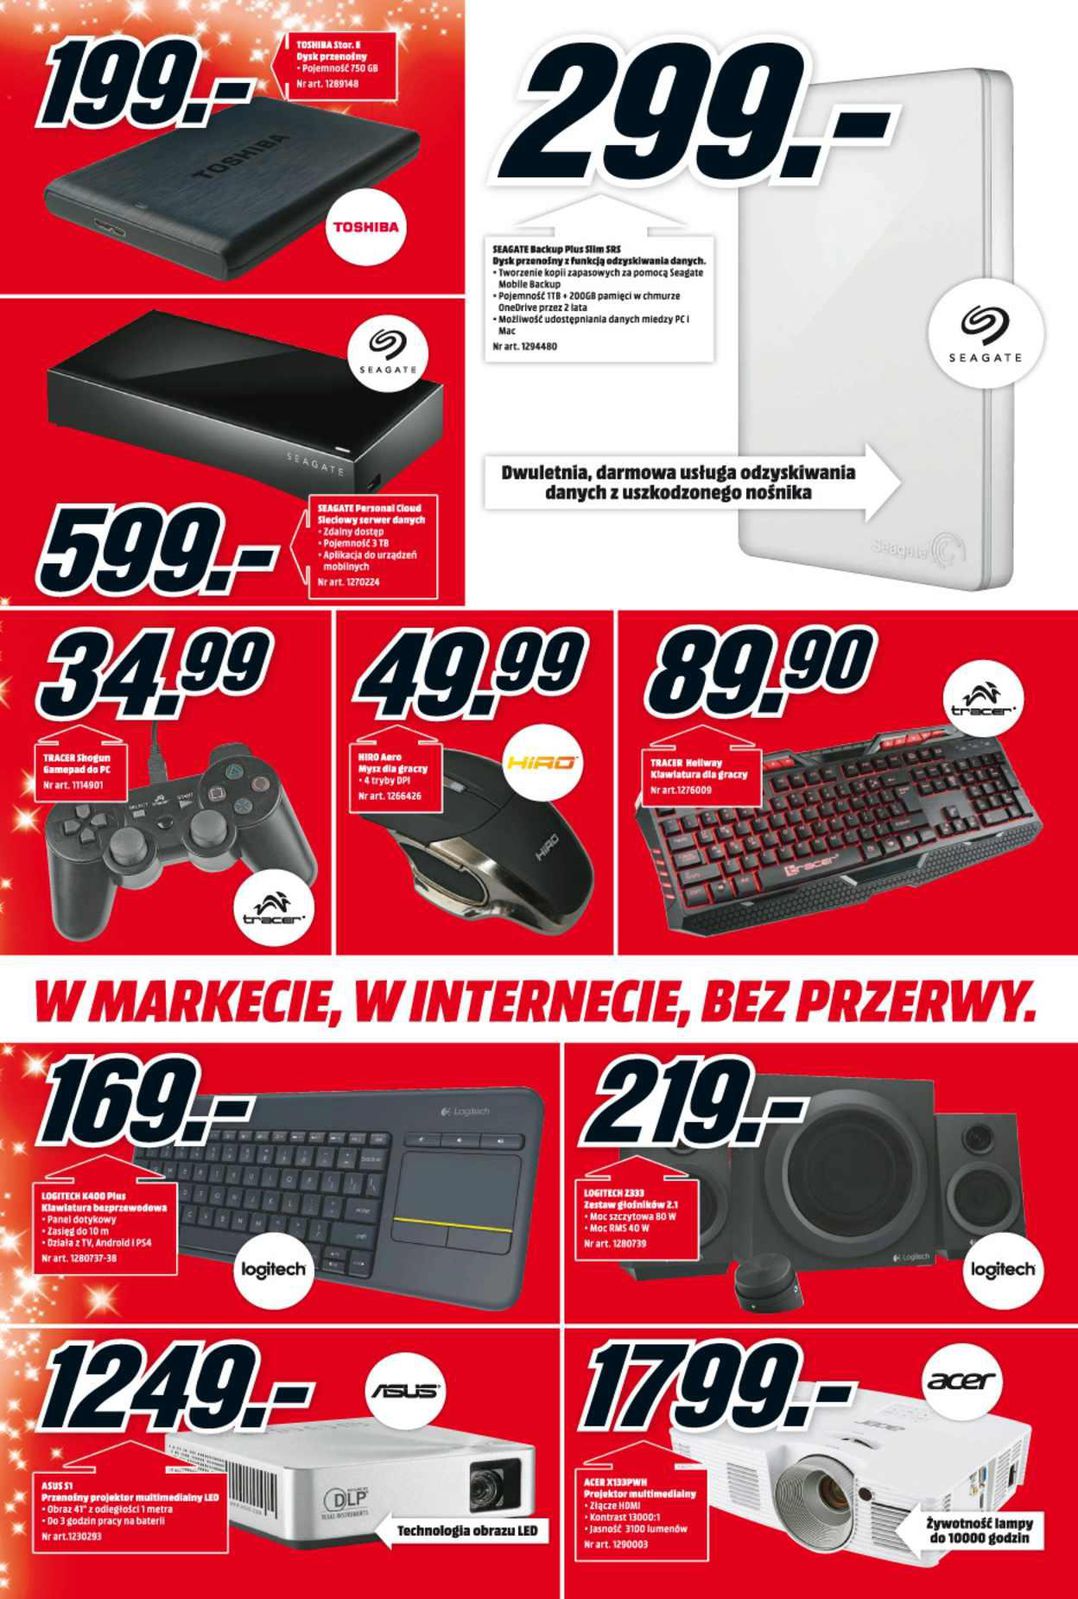 Gazetka promocyjna Media Markt do 17/12/2015 str.3